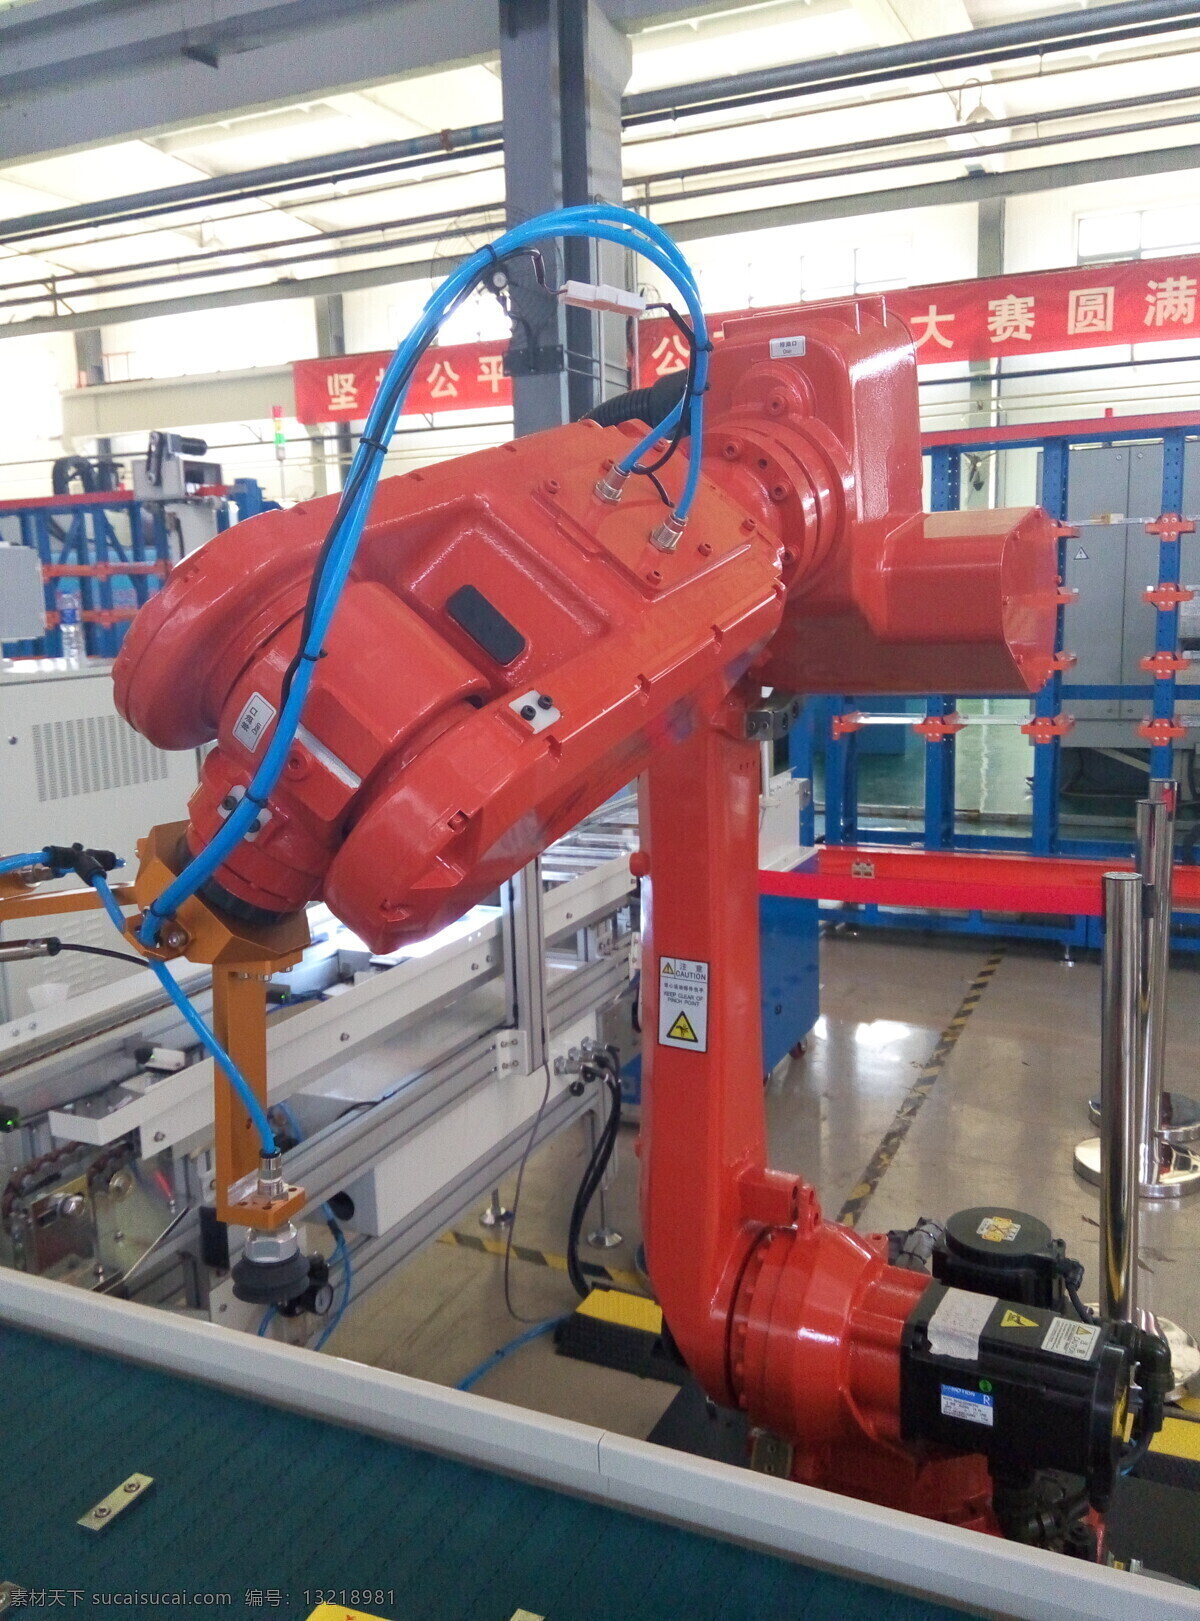 机器人 机械手 职业技能大赛 天津机电 职业教育 现代科技 工业生产 白色